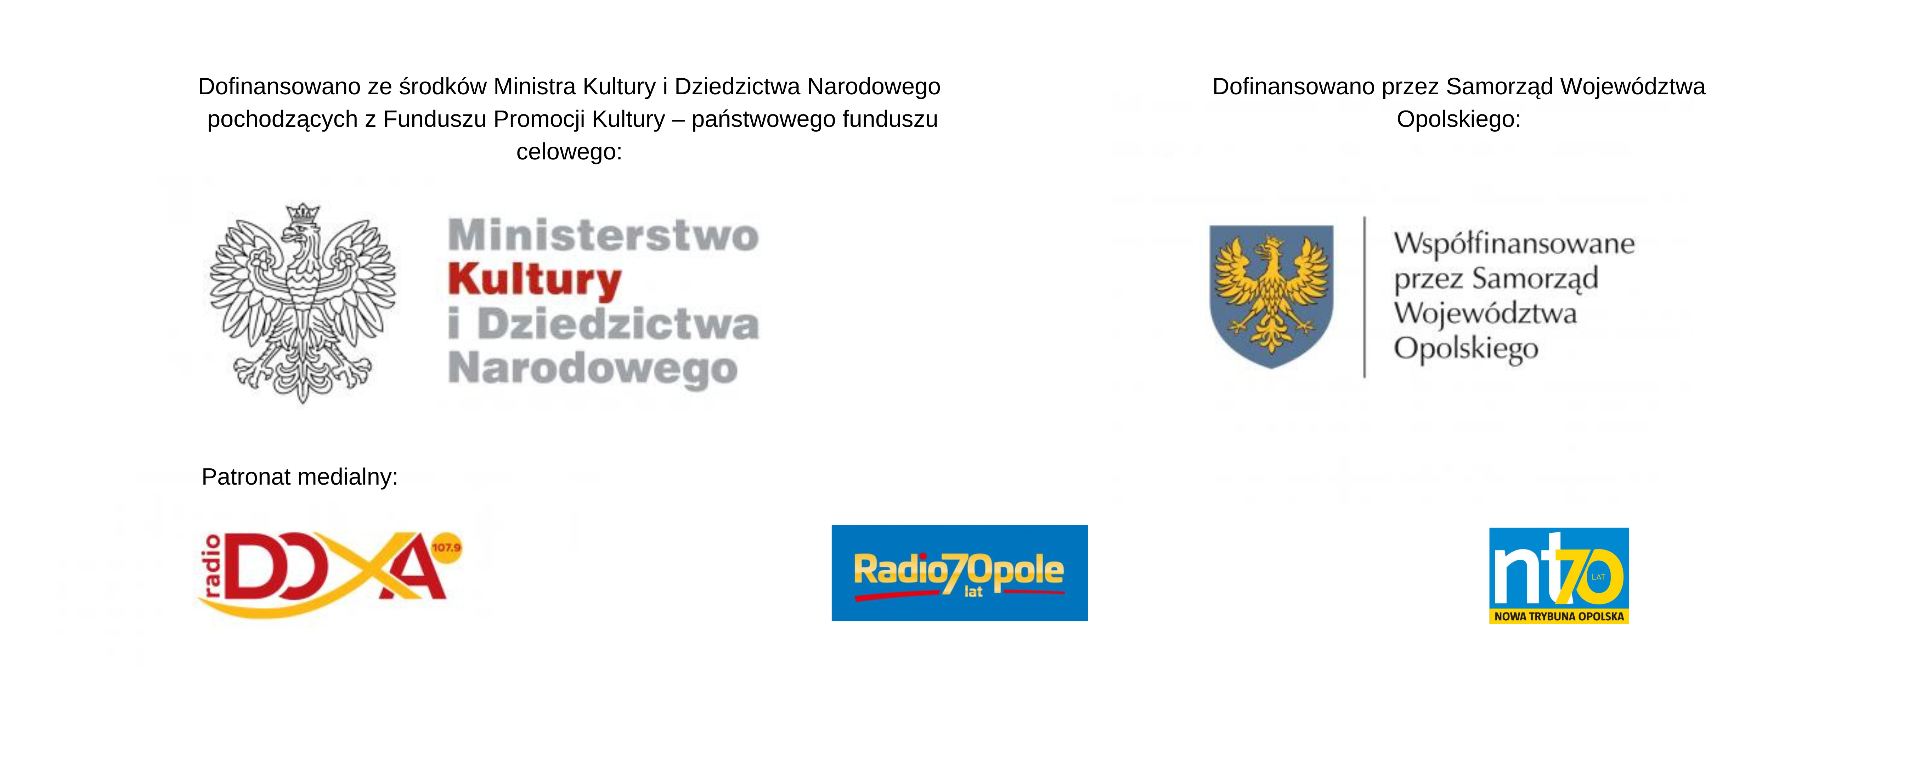 Belka logotypów, projekt dofinansowany przez MKiDN, Samorząd Województwa Opolskiego